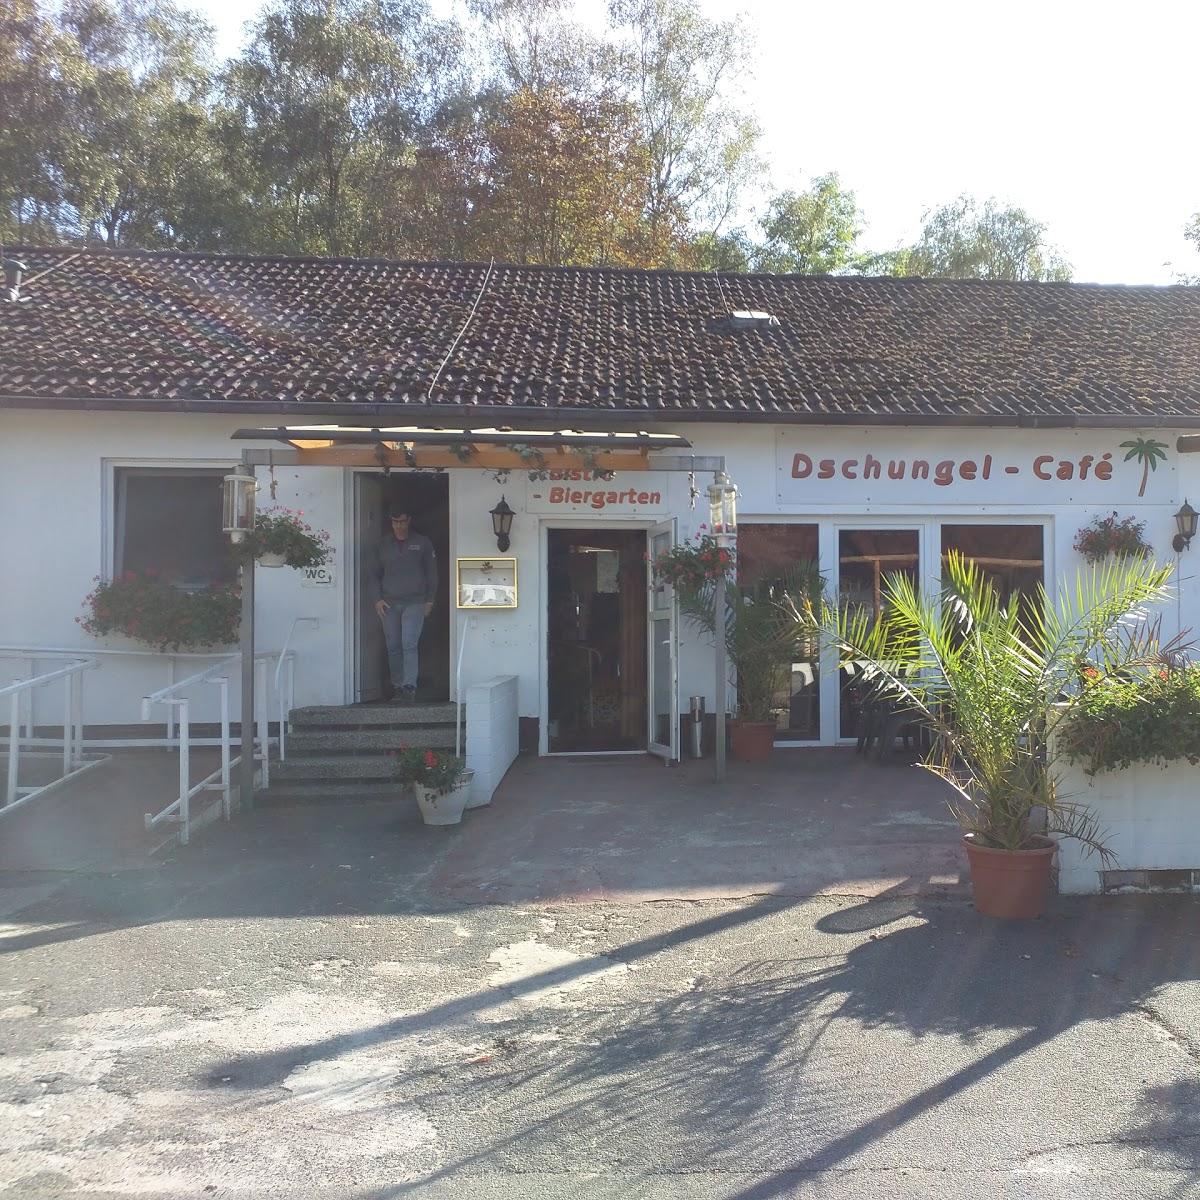 Restaurant "Dschungel Bistro-Cafe" in  Eschede